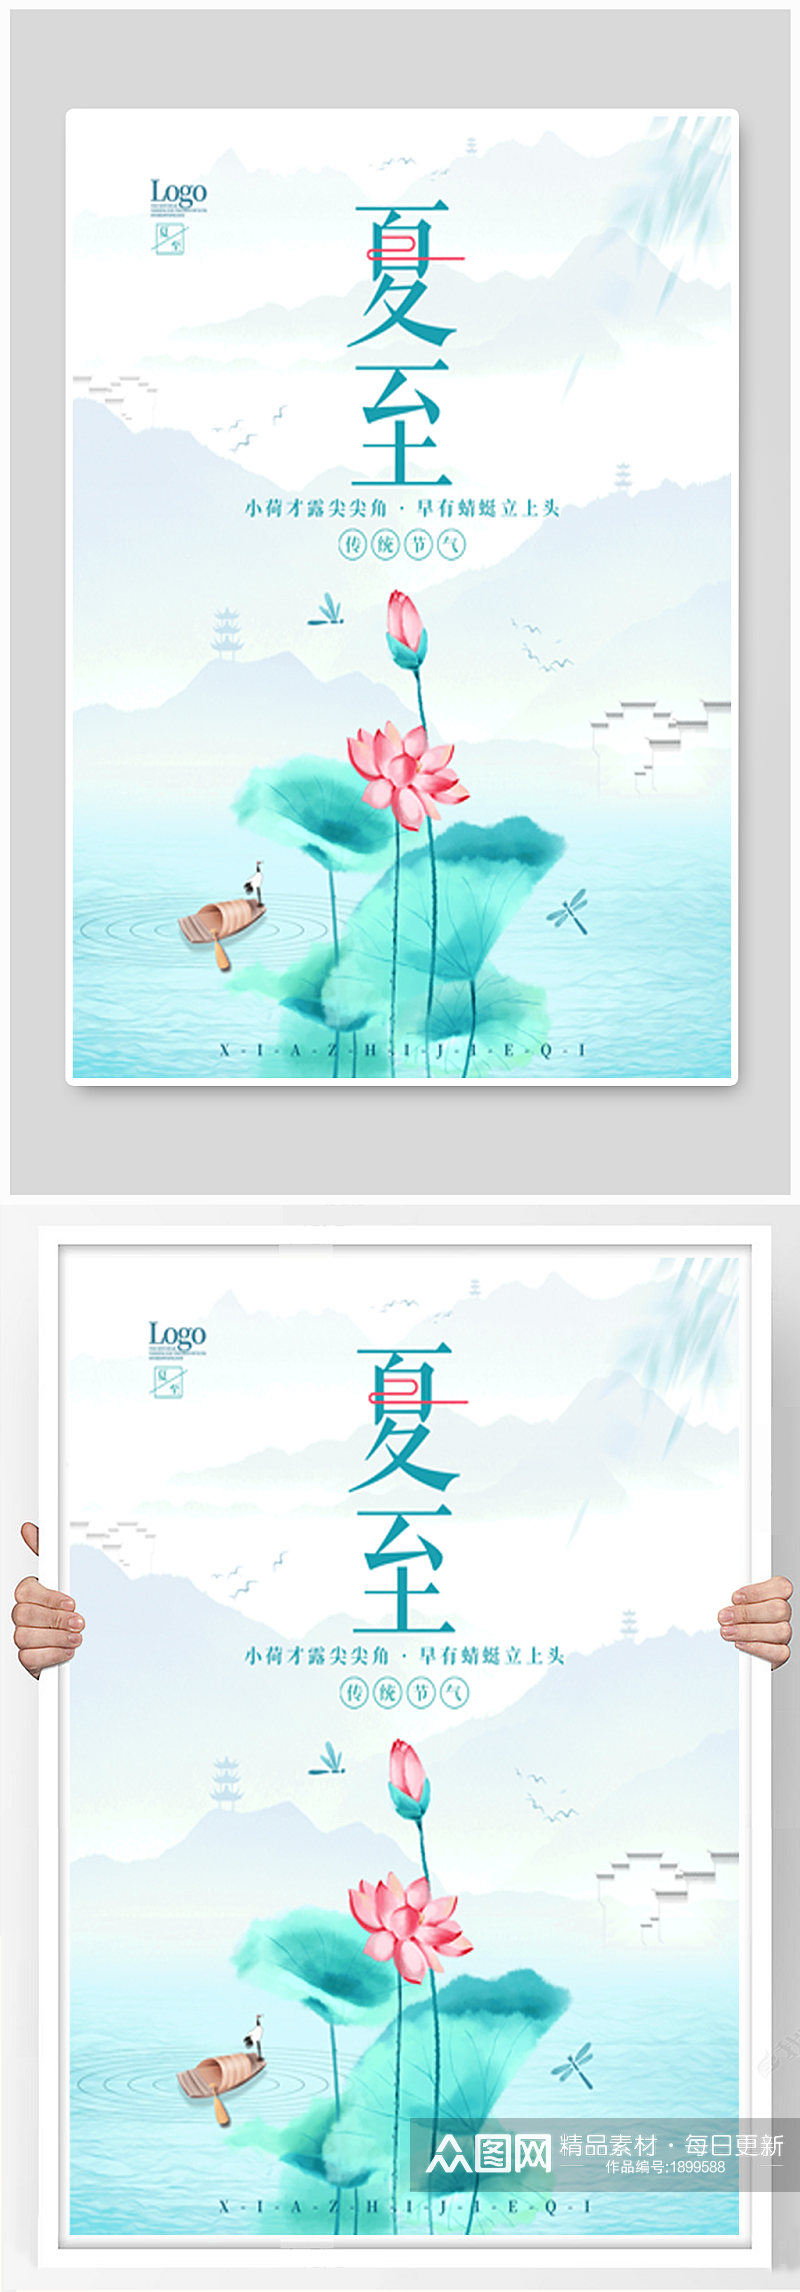 中国风简约留白夏至节气宣传动态海报素材